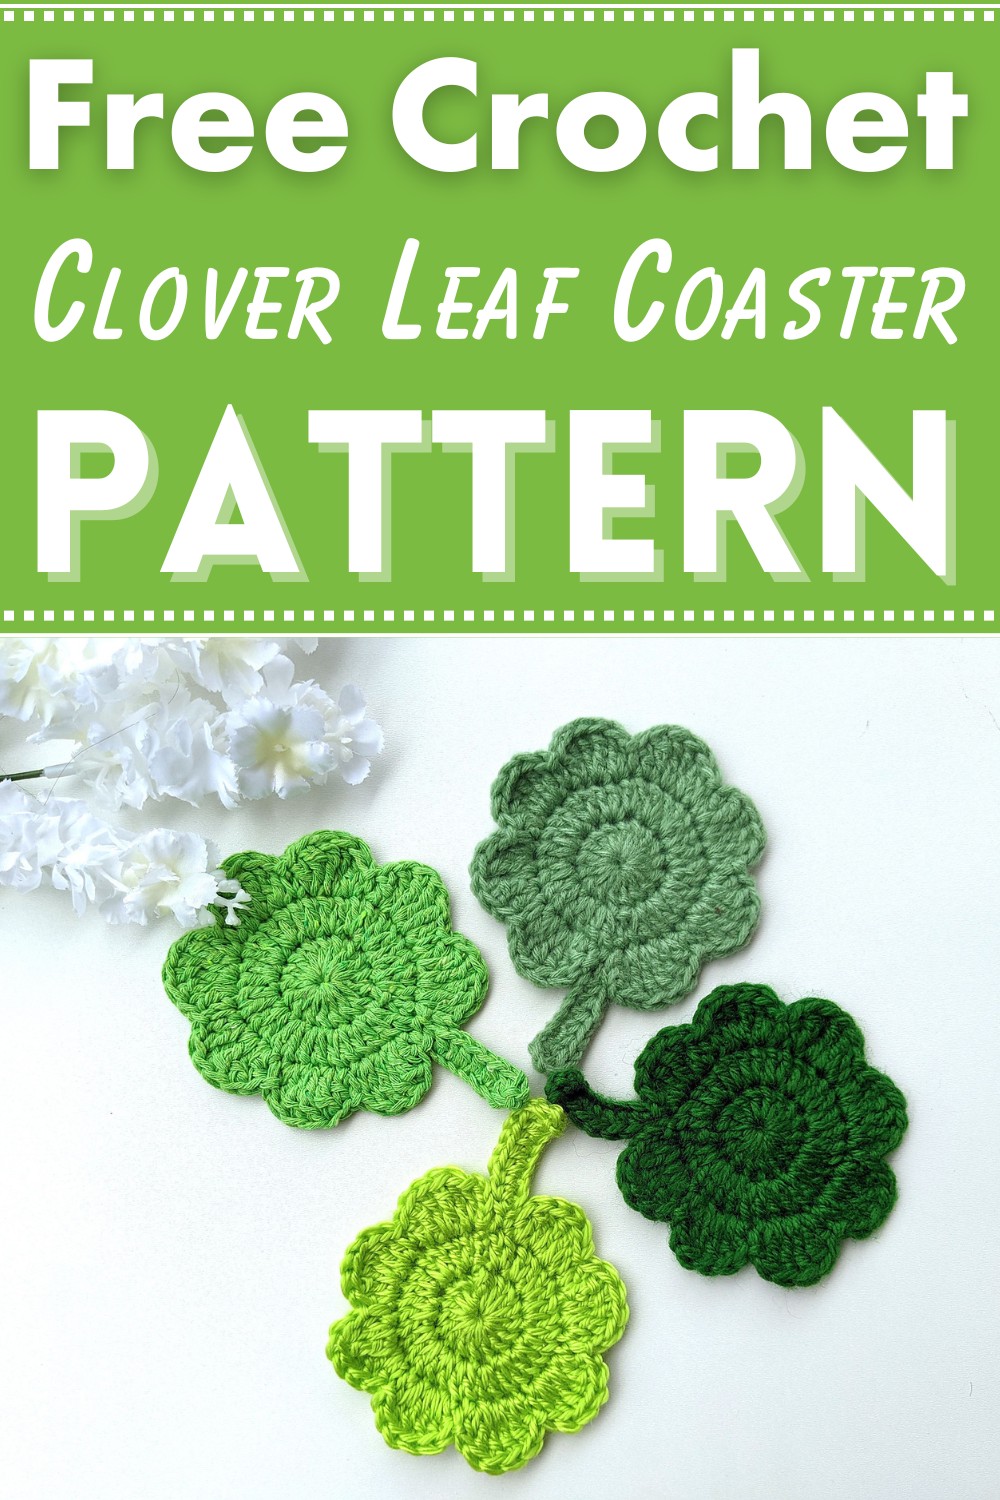 Clover Leaf Coaster